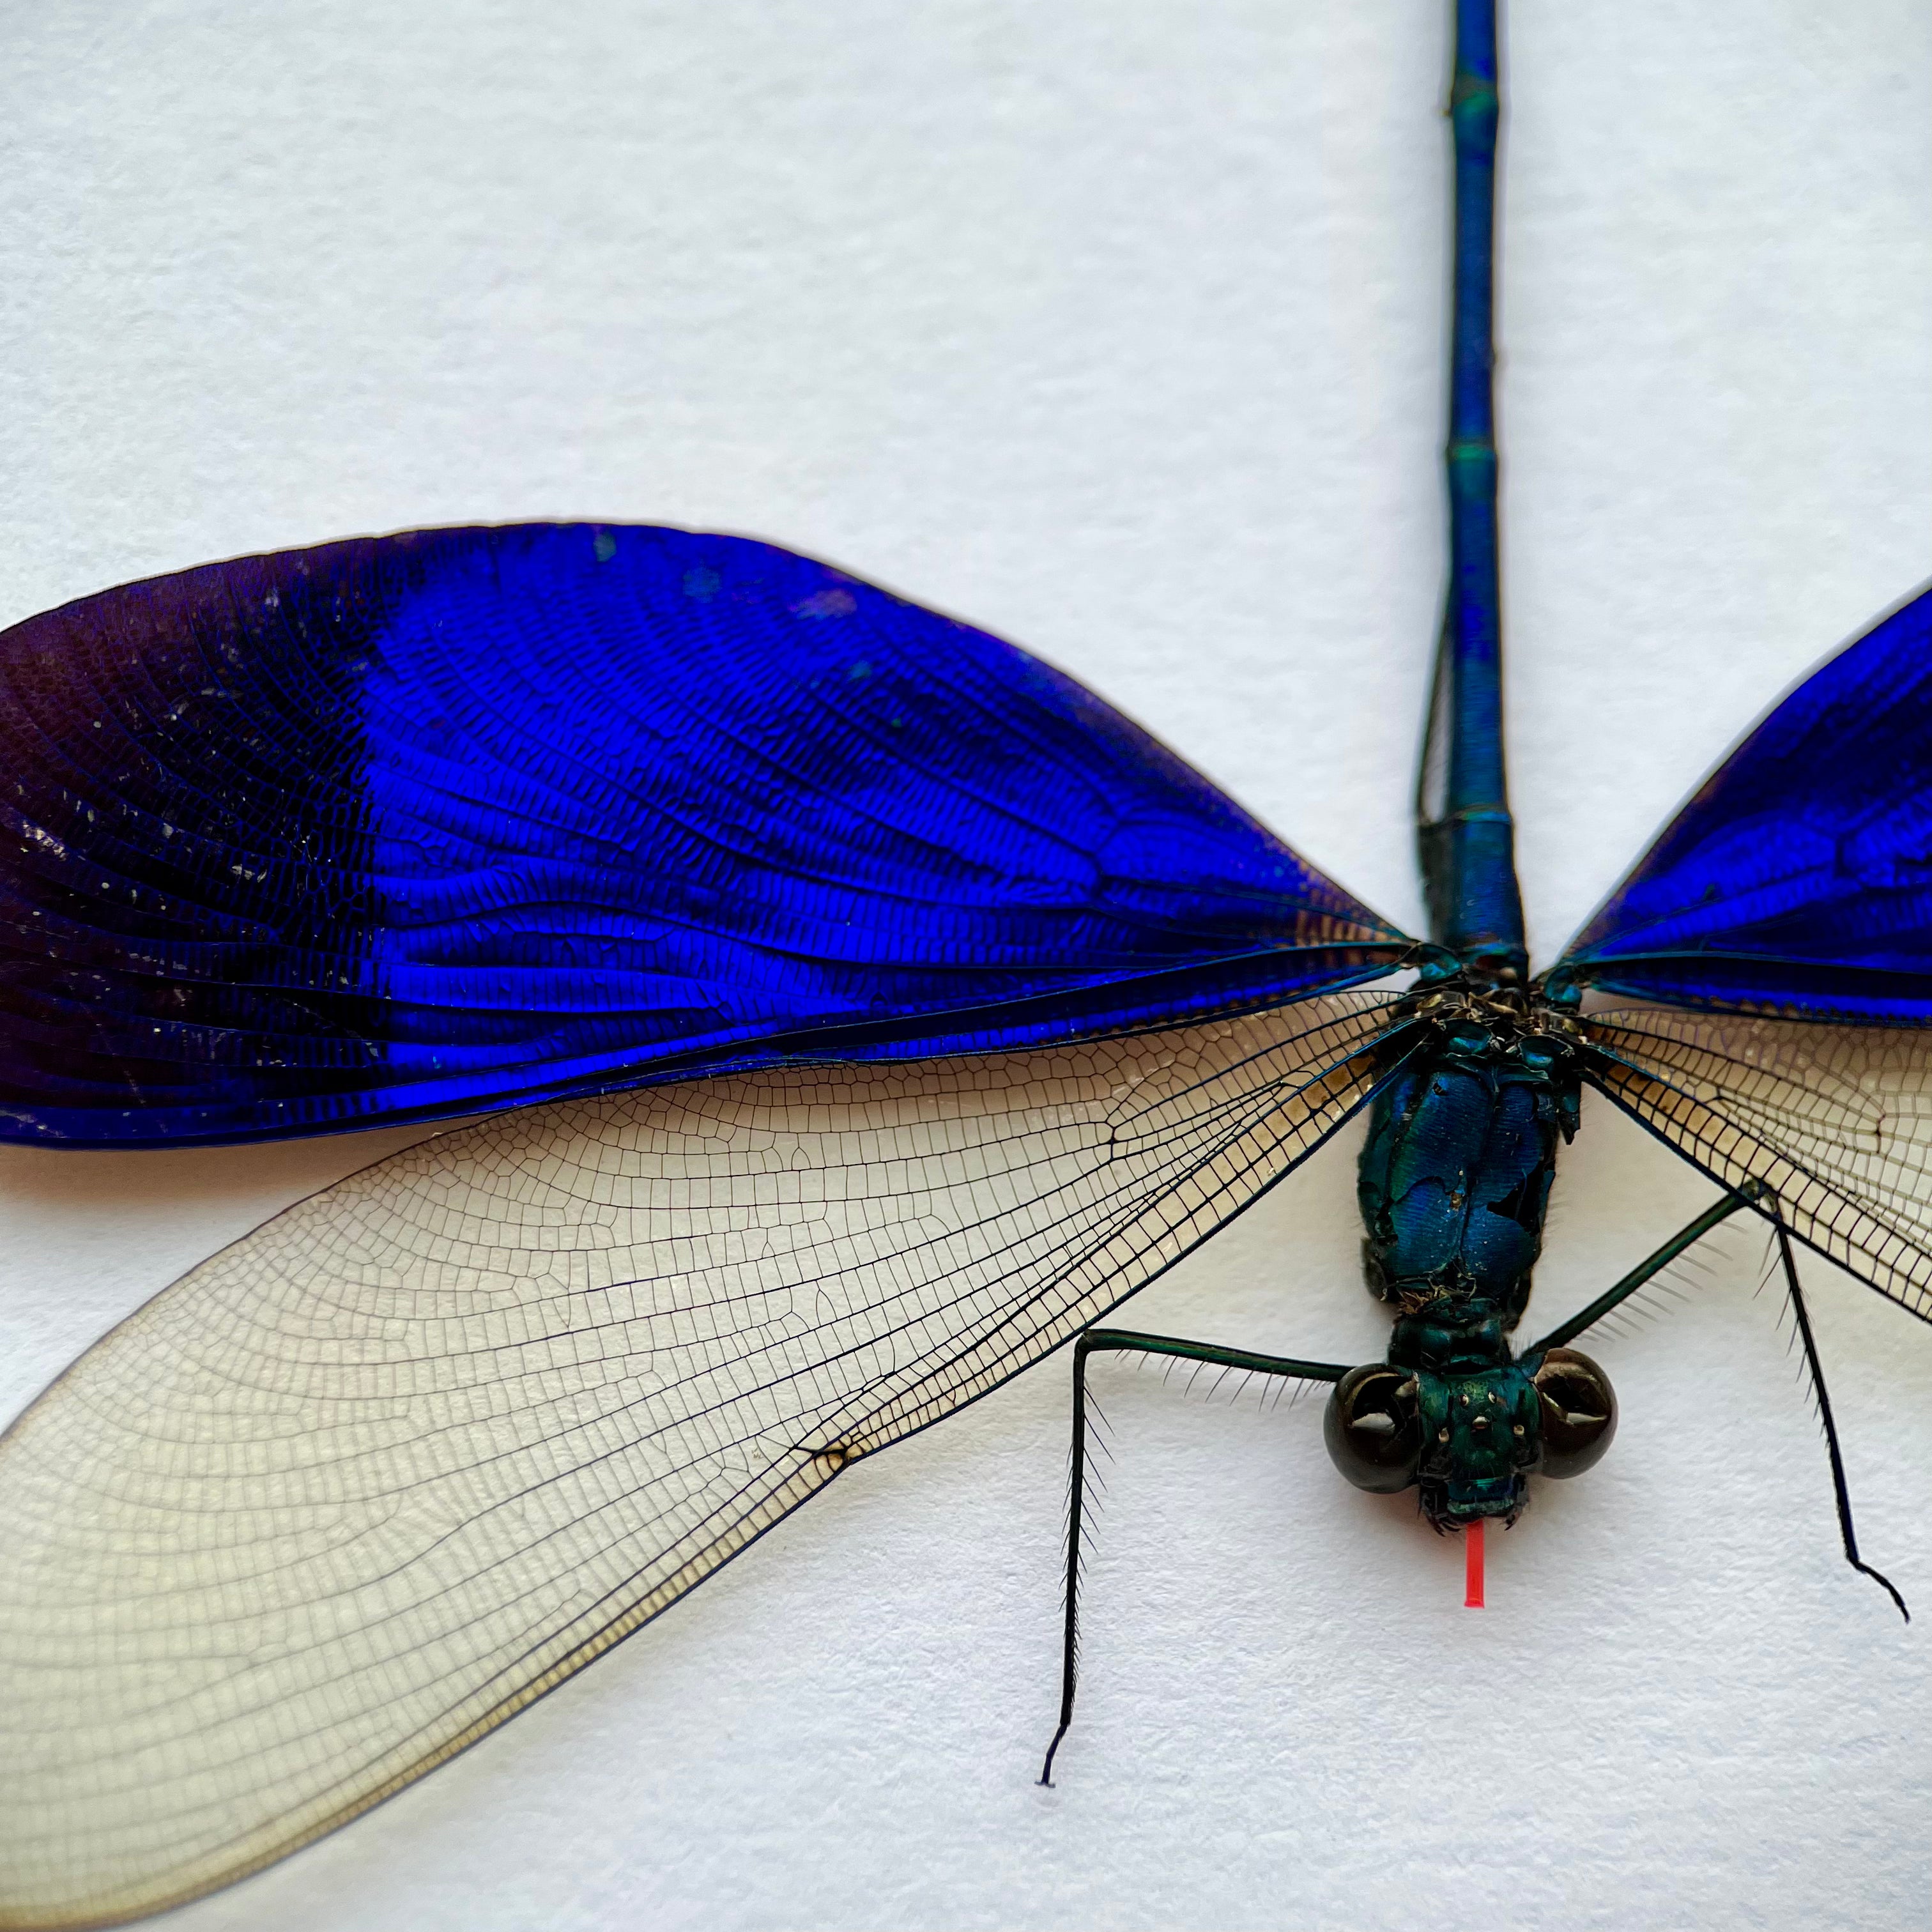 Blue Dragonfly Neurobasis Kaupi SPREAD insect Damselfly - Little Caterpillar Art Little Caterpillar Art  